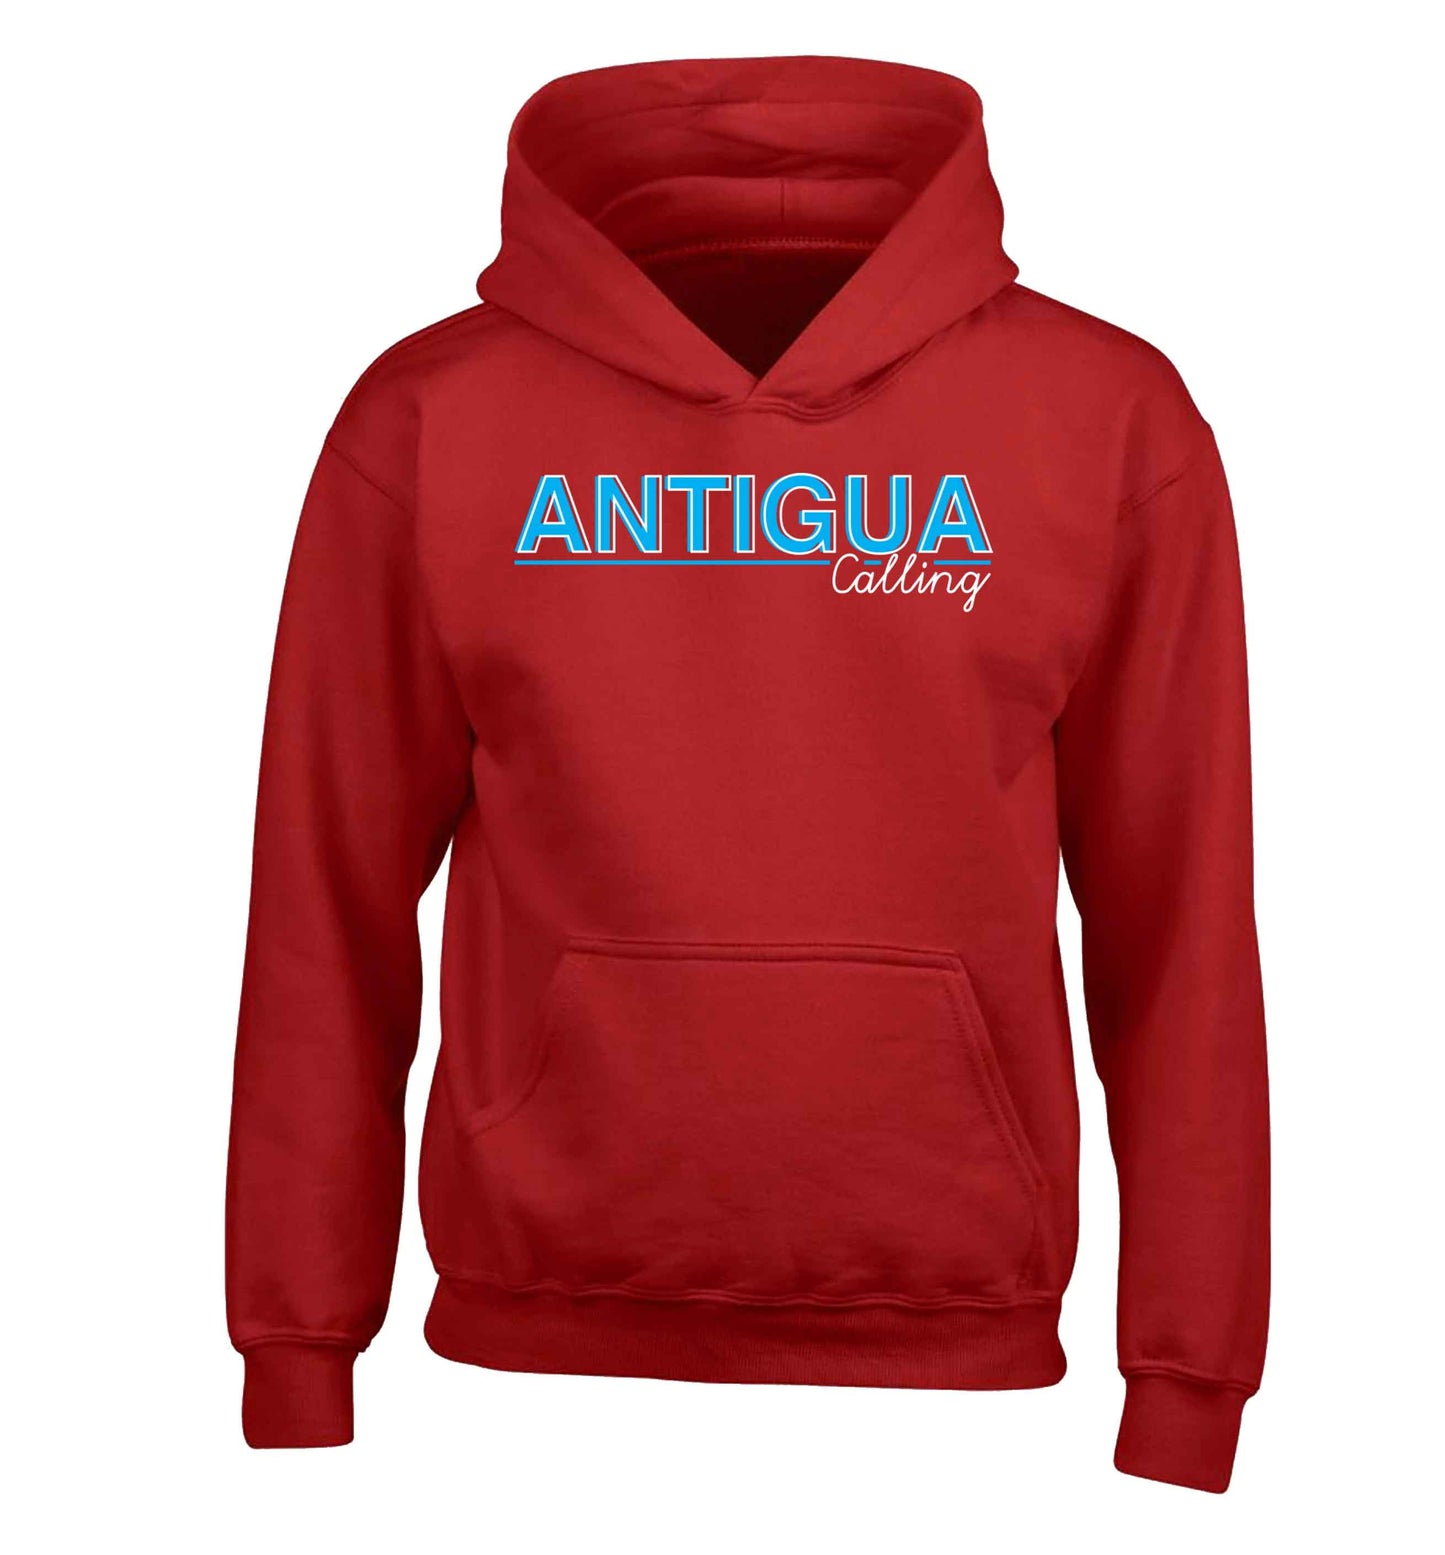 Antigua calling children's red hoodie 12-13 Years